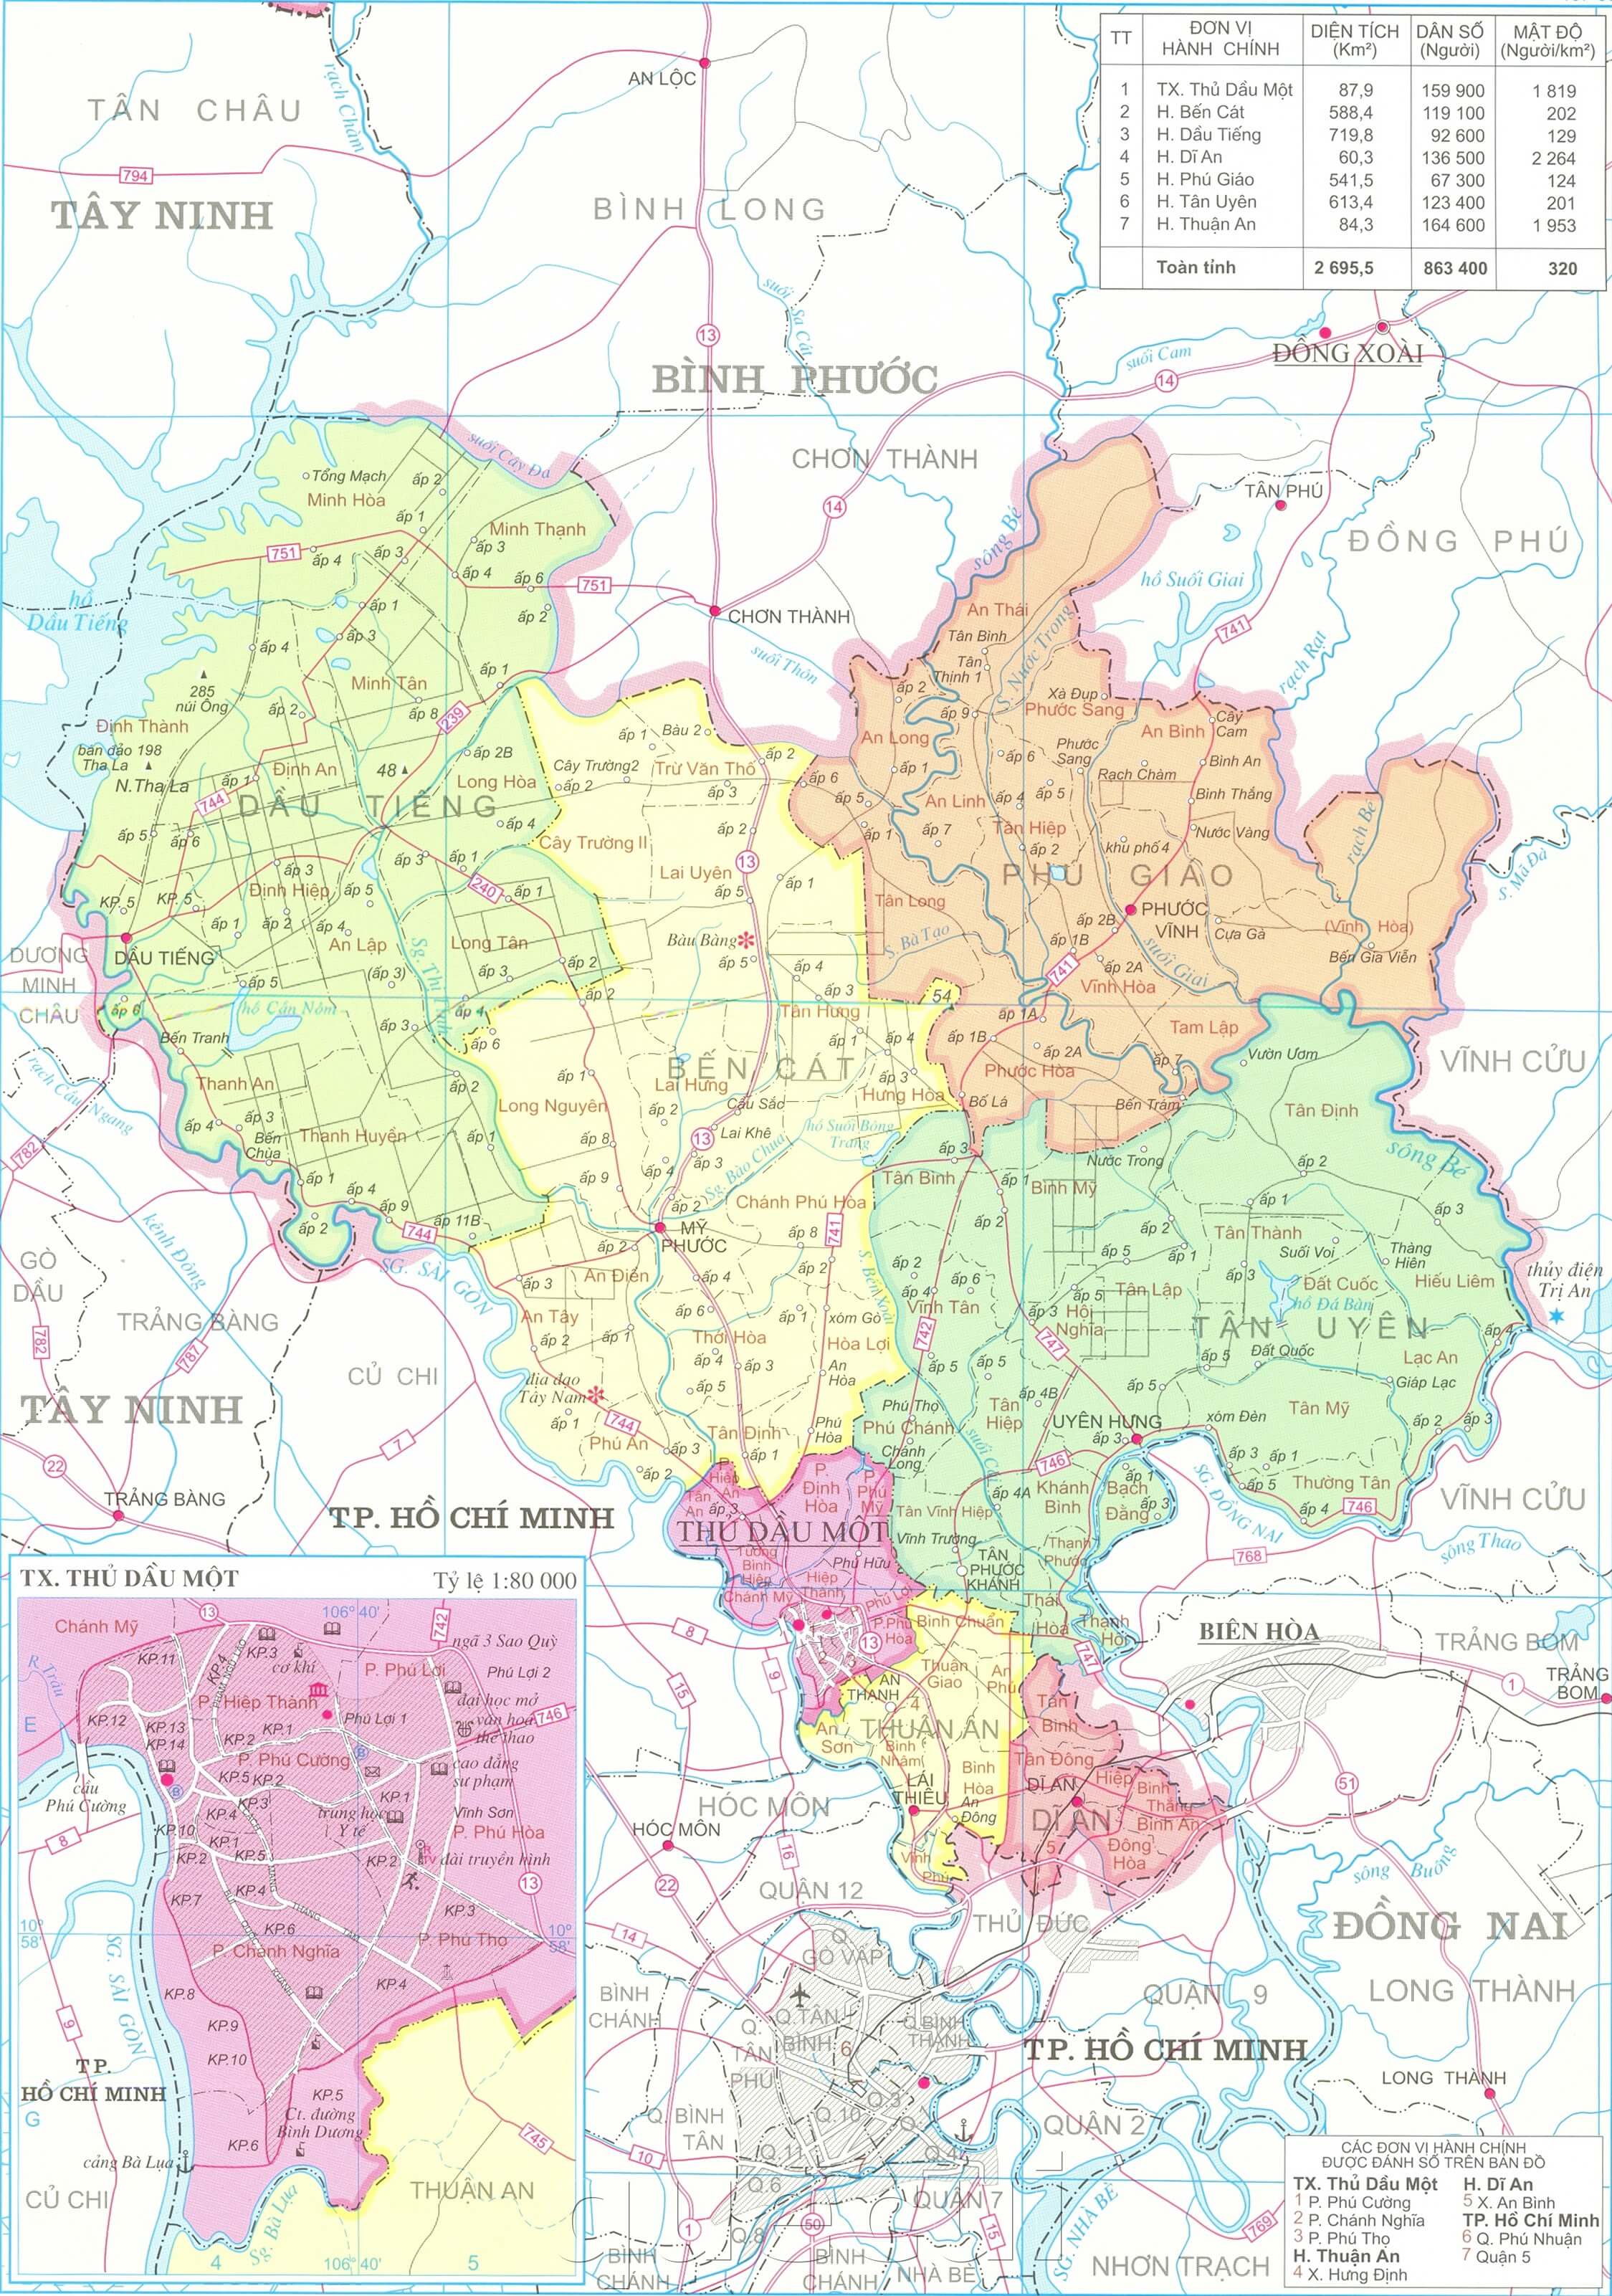 Hãy tìm hiểu về động lực phát triển mới nhất của đất nước qua bản đồ Đắk Lắk